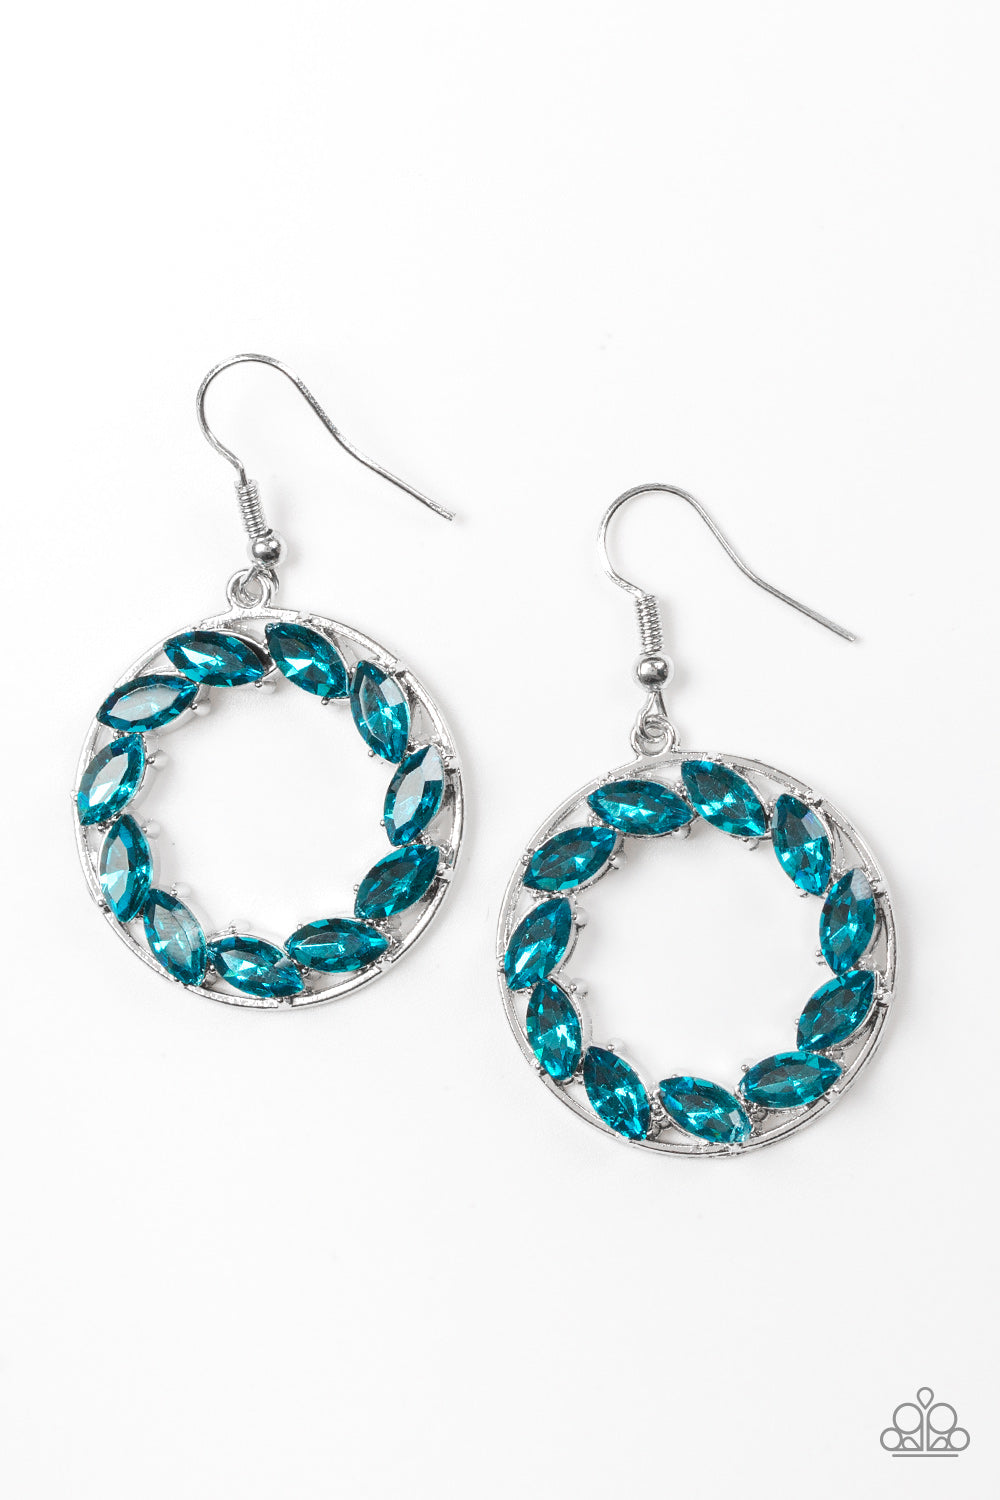 Global Glow - Blue earrings